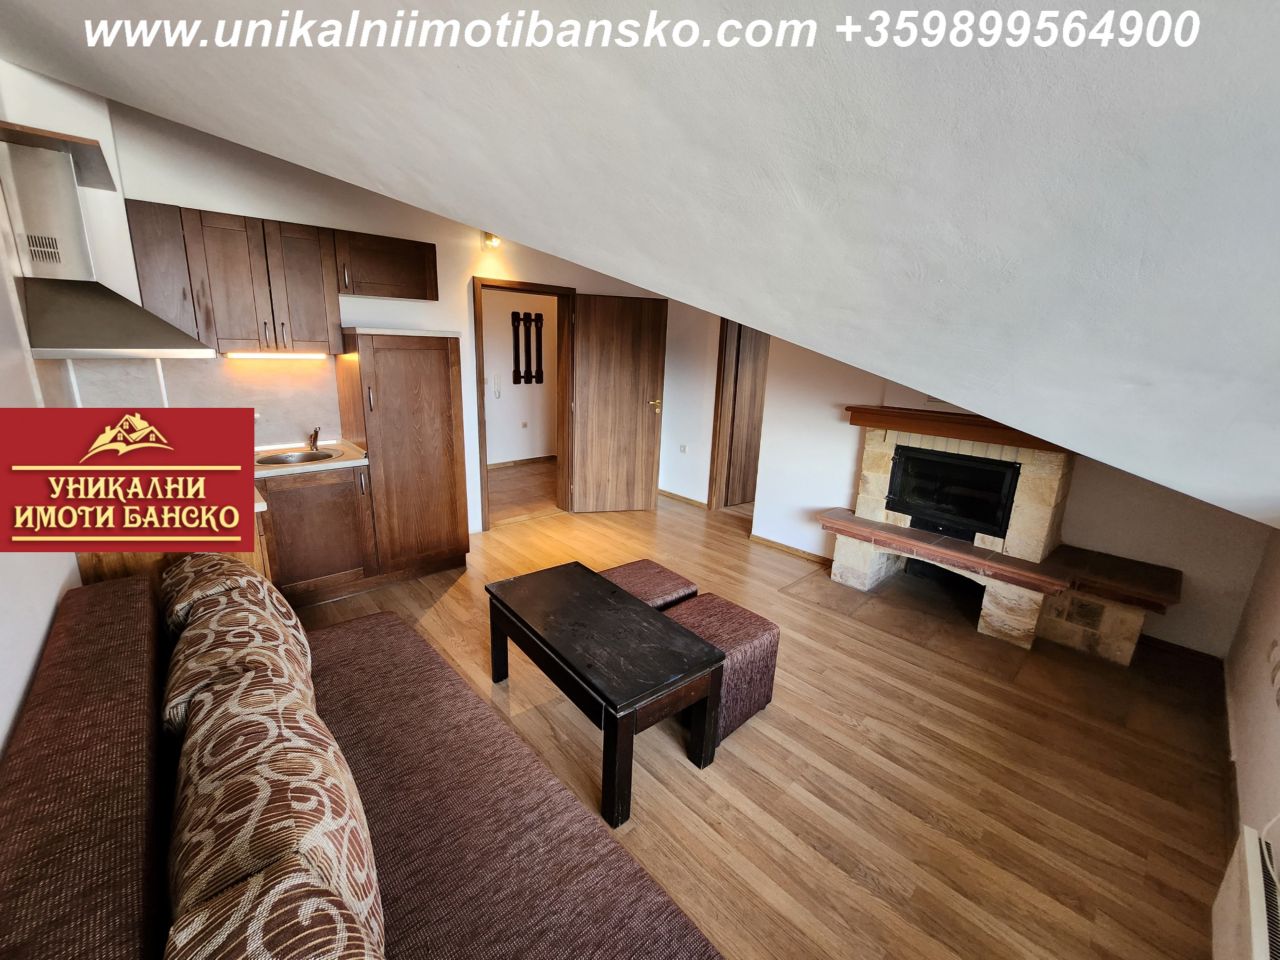 Apartment in Bansko, Bulgaria, 73 sq.m - picture 1